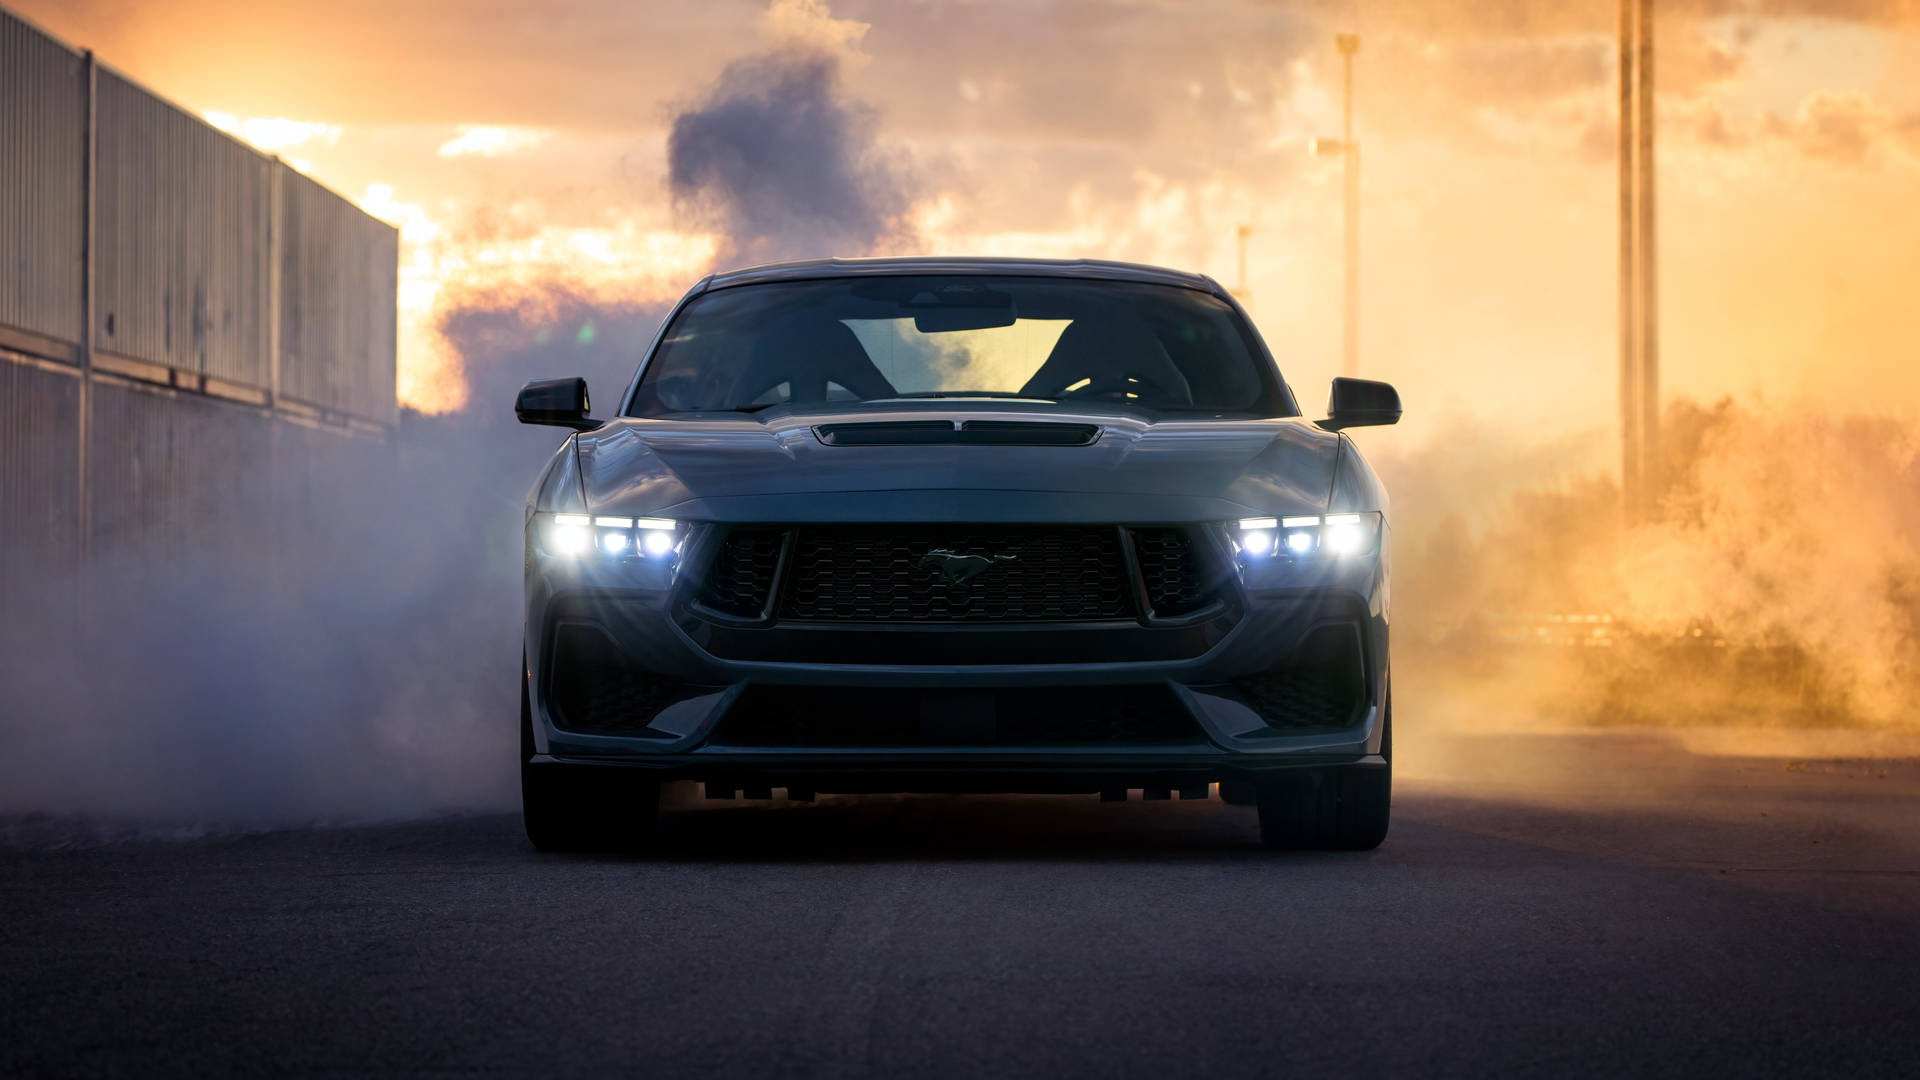 Cool Mustang Smoke Wallpaper